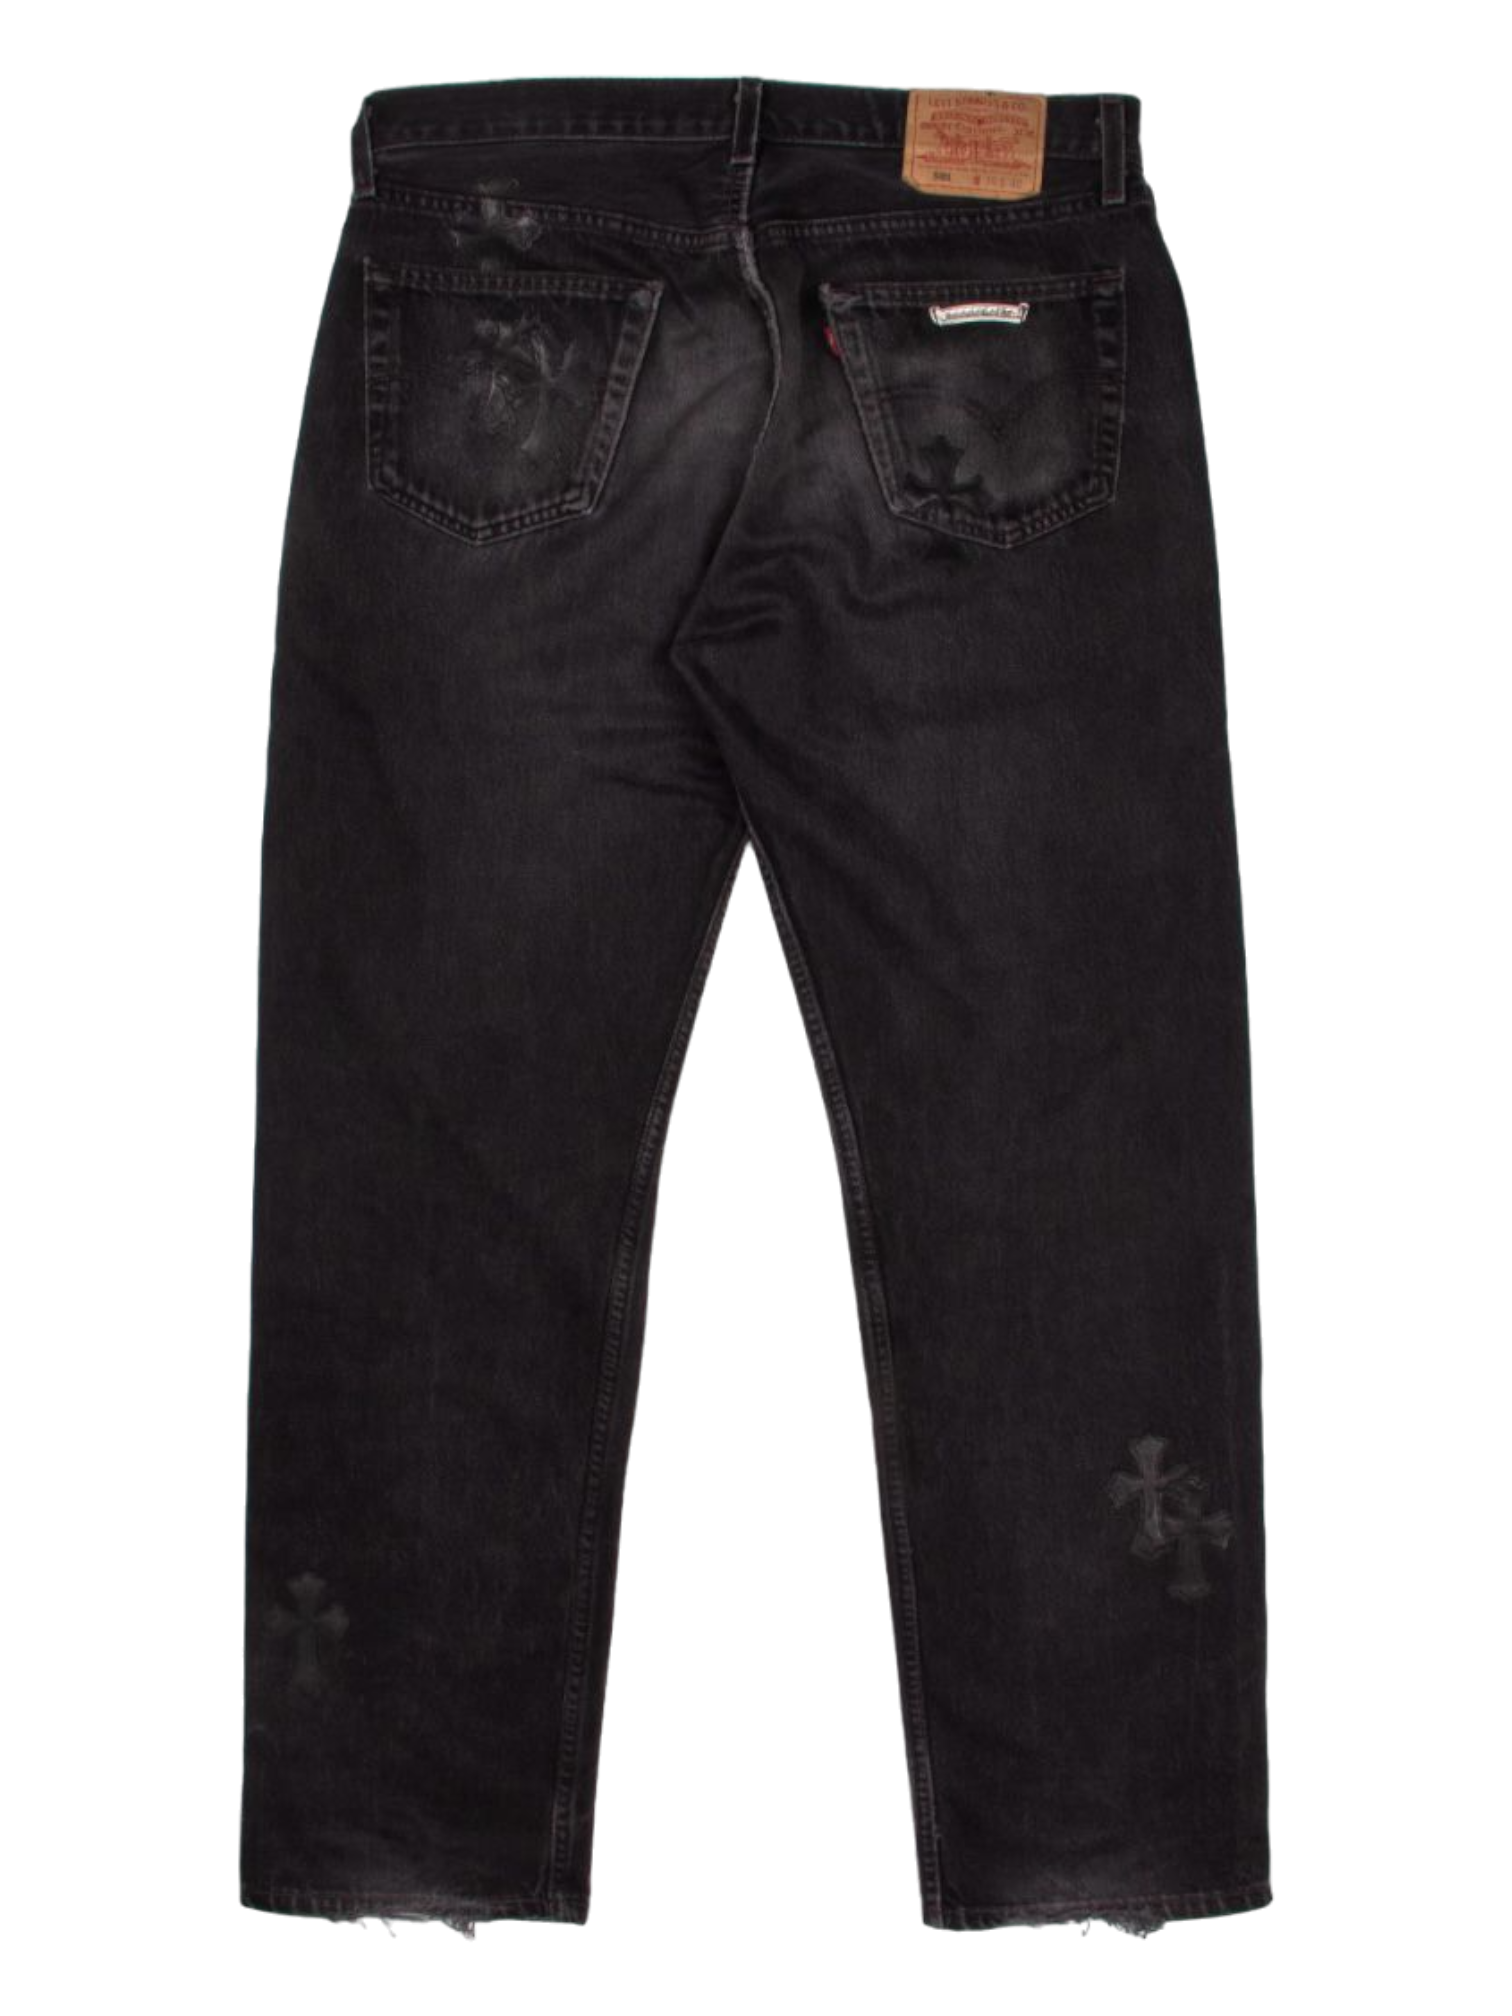 Chrome Hearts Black Cross Patch Black Levi’s Denim Jeans